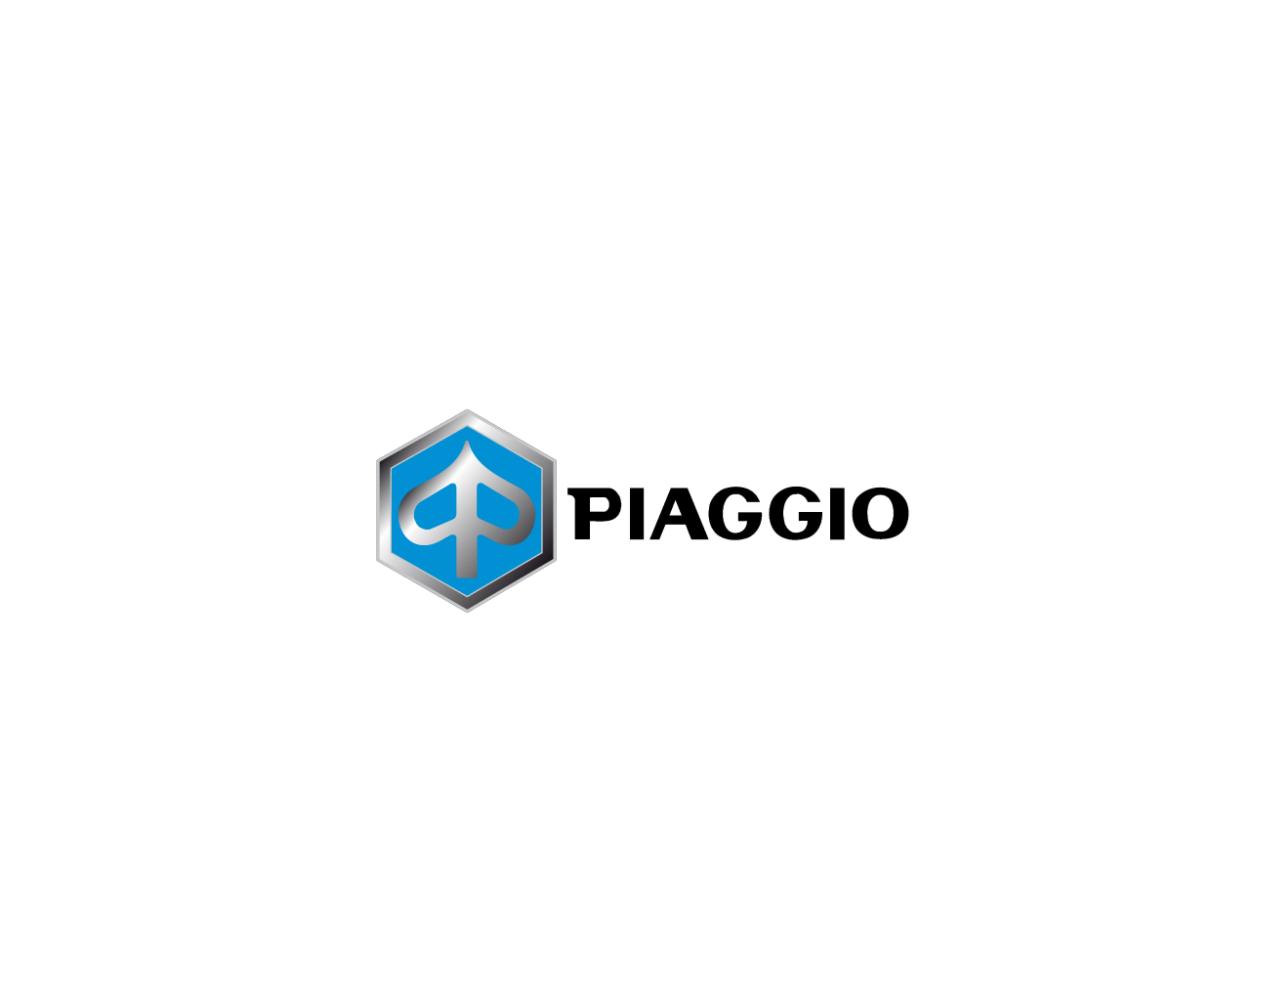 PIAGGIO PRODUCTS